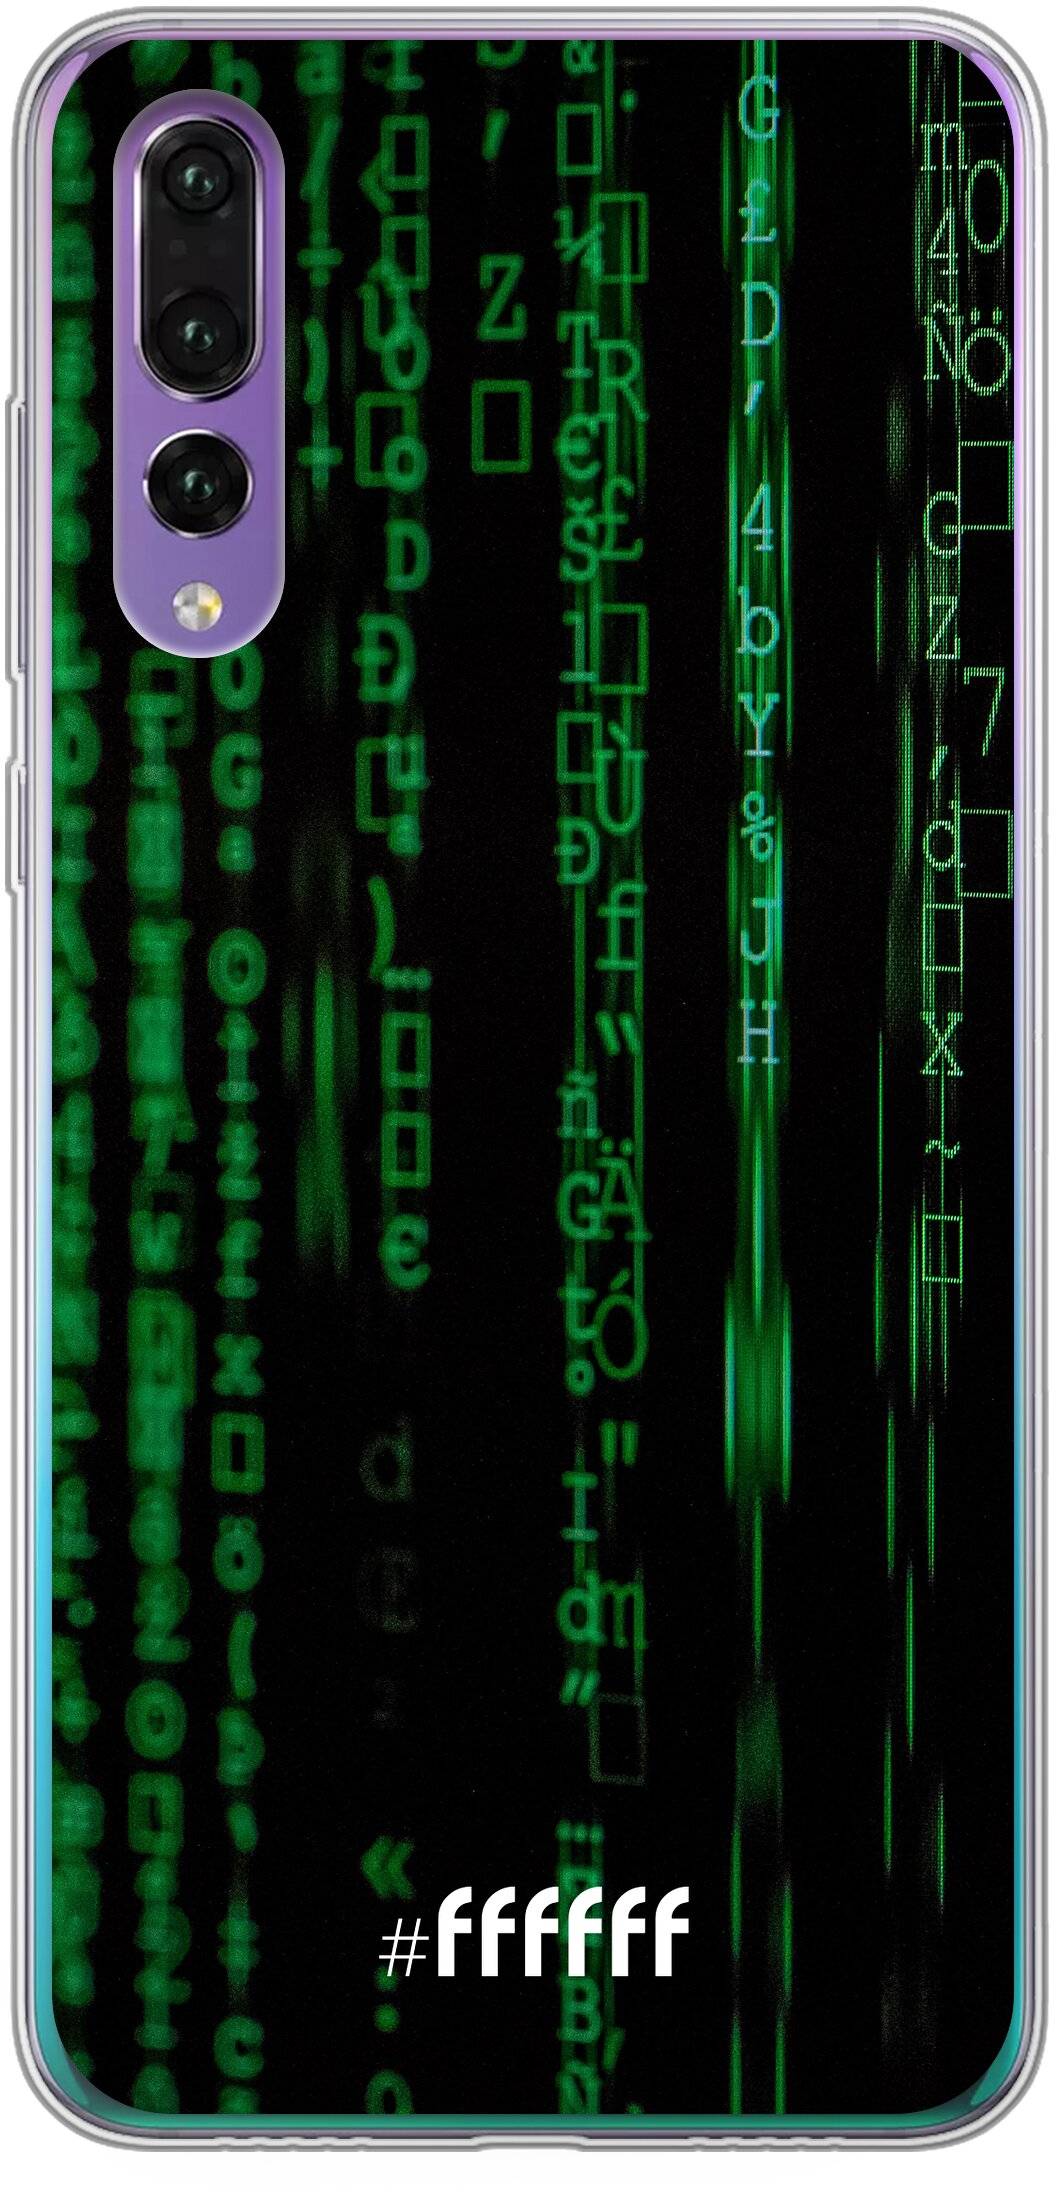 Hacking The Matrix P30